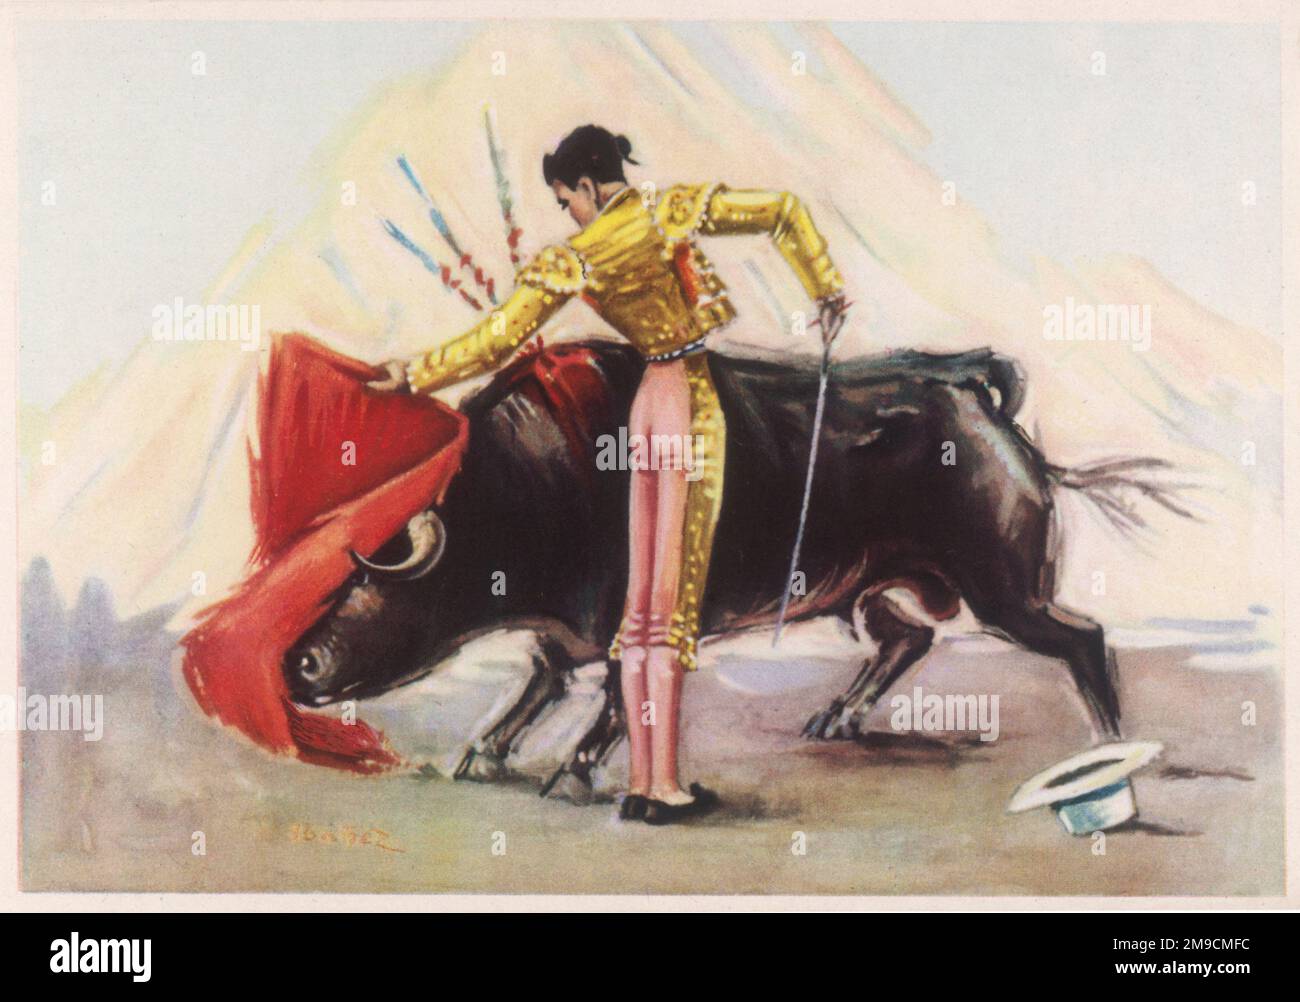 Un matador guadagna la padronanza finale sopra un toro nell'arena, saltando la relativa resistenza con le lanze alla spina dorsale prima di somministrare il colpo fatale finale Foto Stock